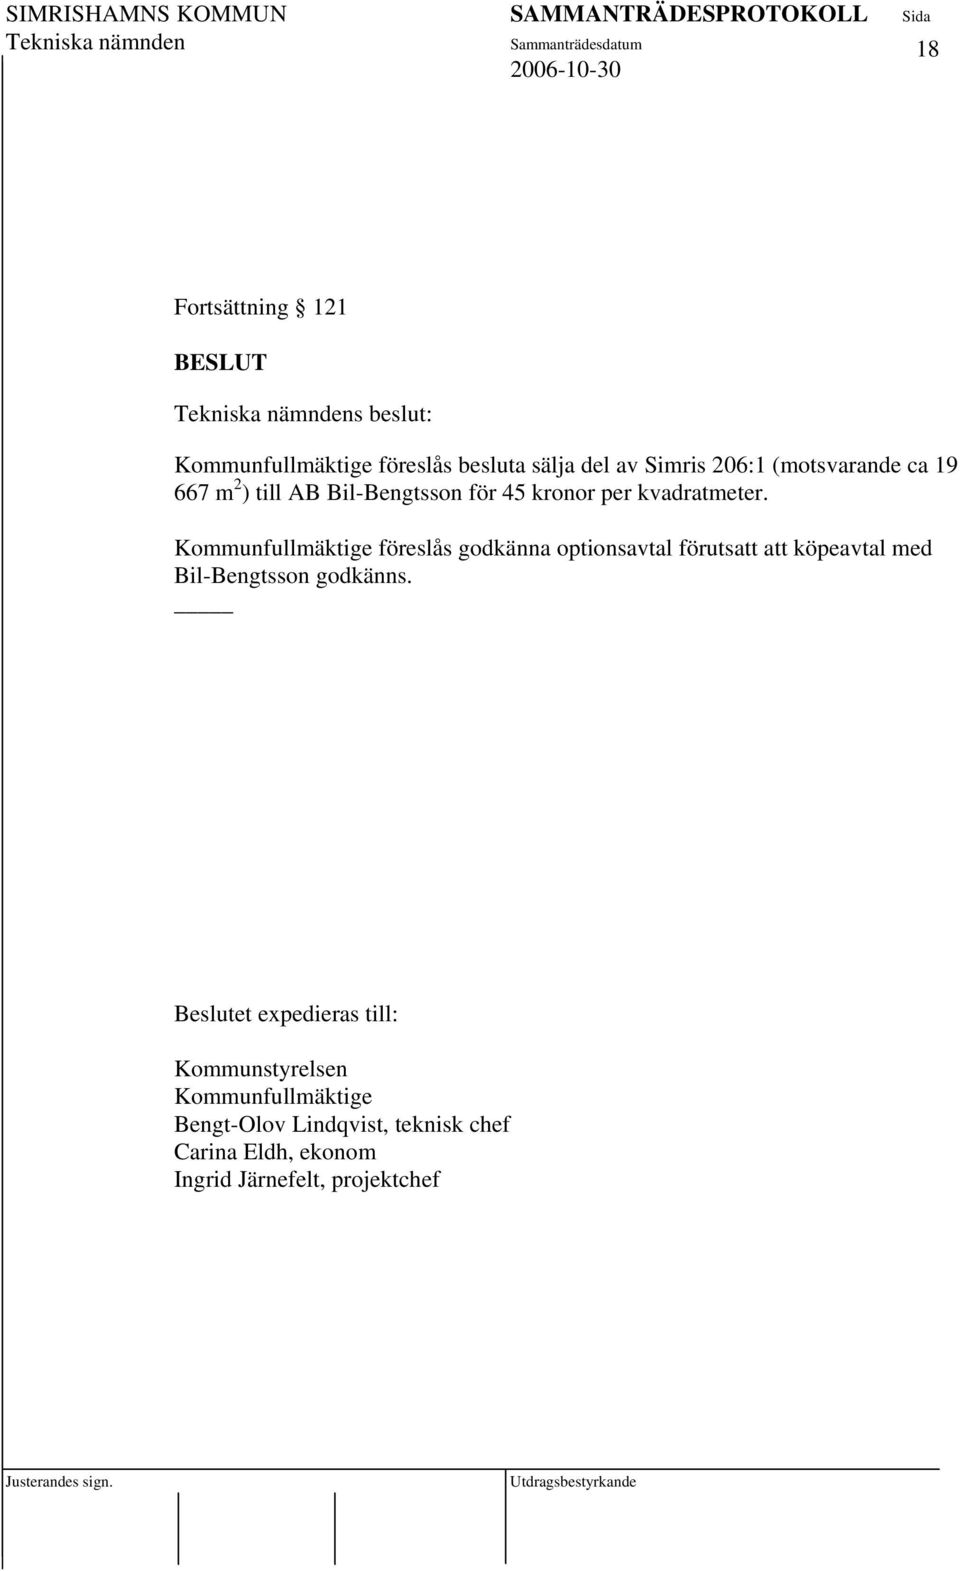 Kommunfullmäktige föreslås godkänna optionsavtal förutsatt att köpeavtal med Bil-Bengtsson godkänns.